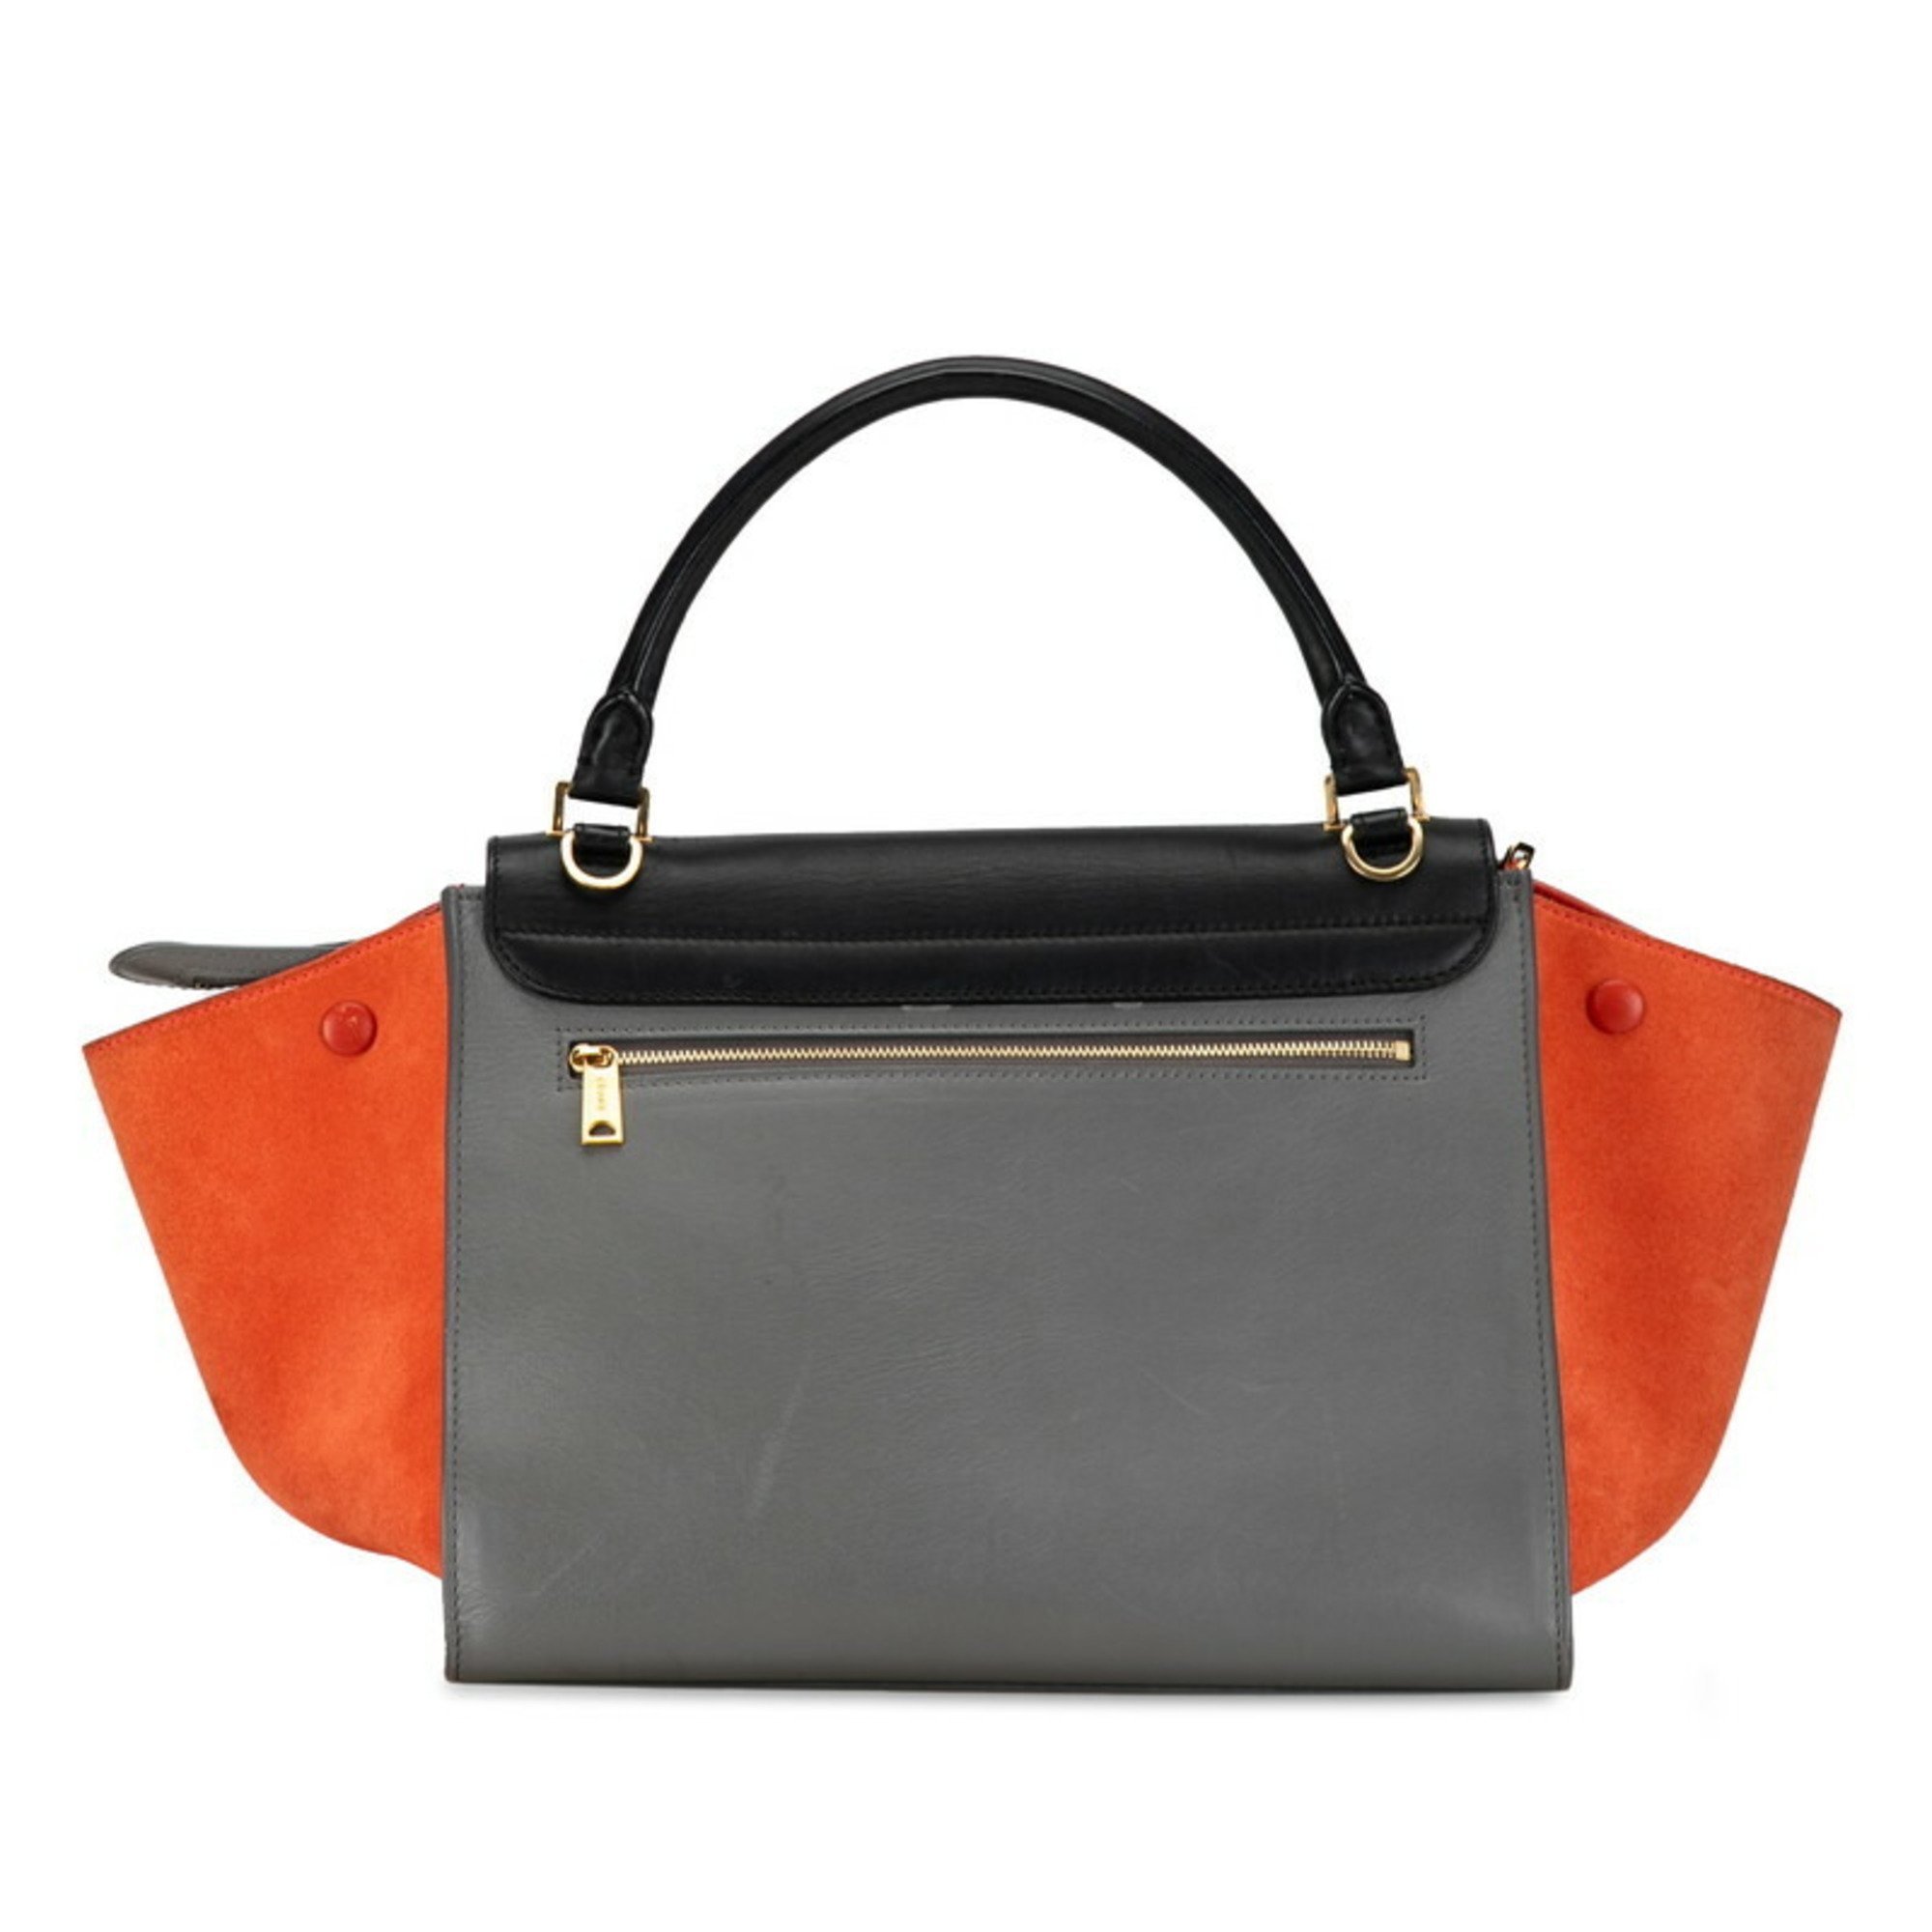 Celine Trapeze Handbag Shoulder Bag 174683 Grey Black Orange Leather Suede Women's CELINE